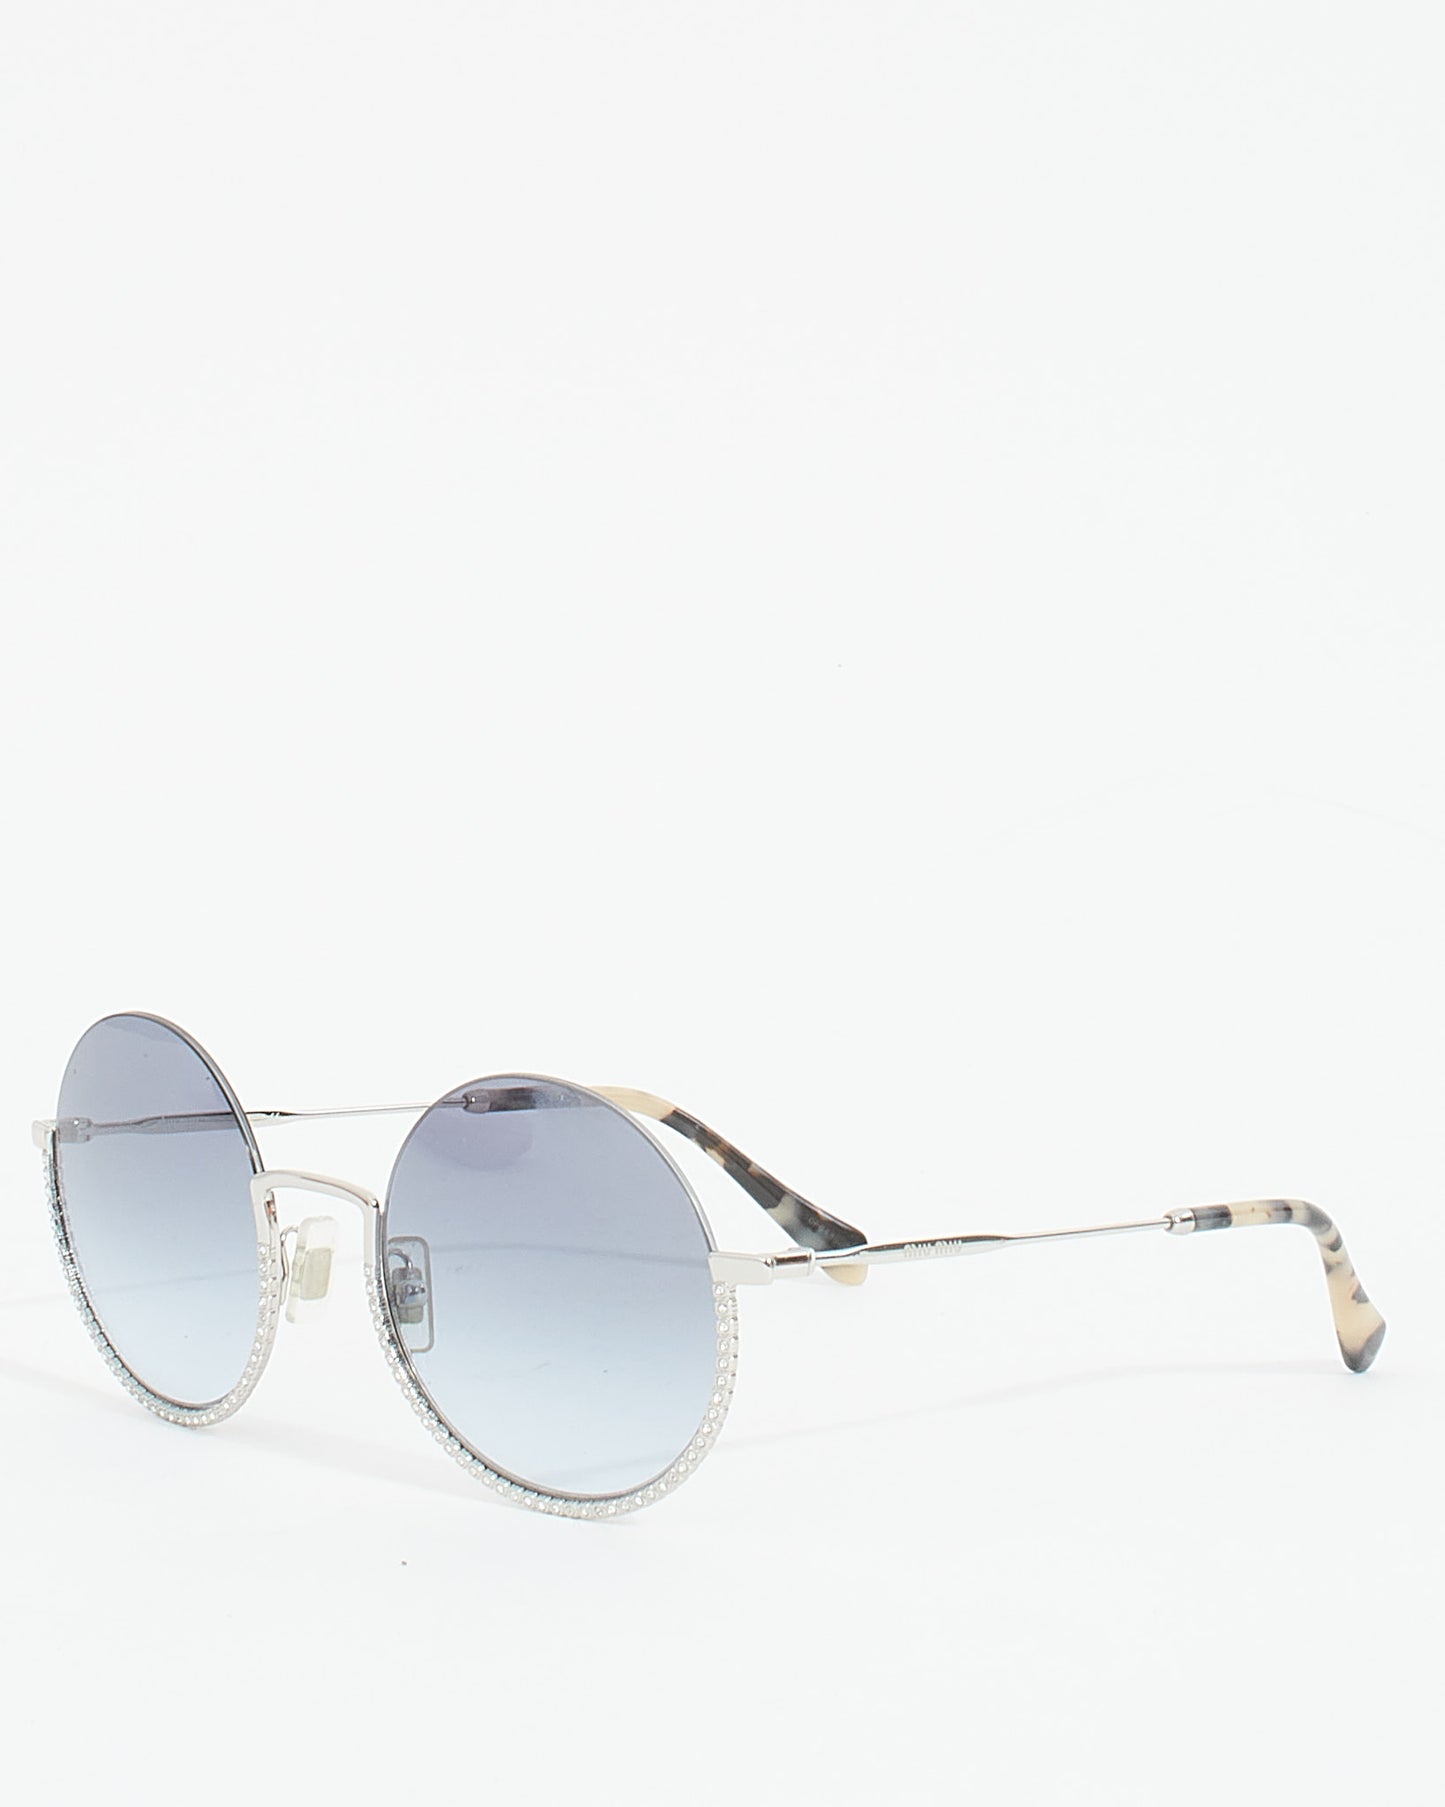 Miu Miu Silver Metal Rhinestone SMU69U Round Sunglasses